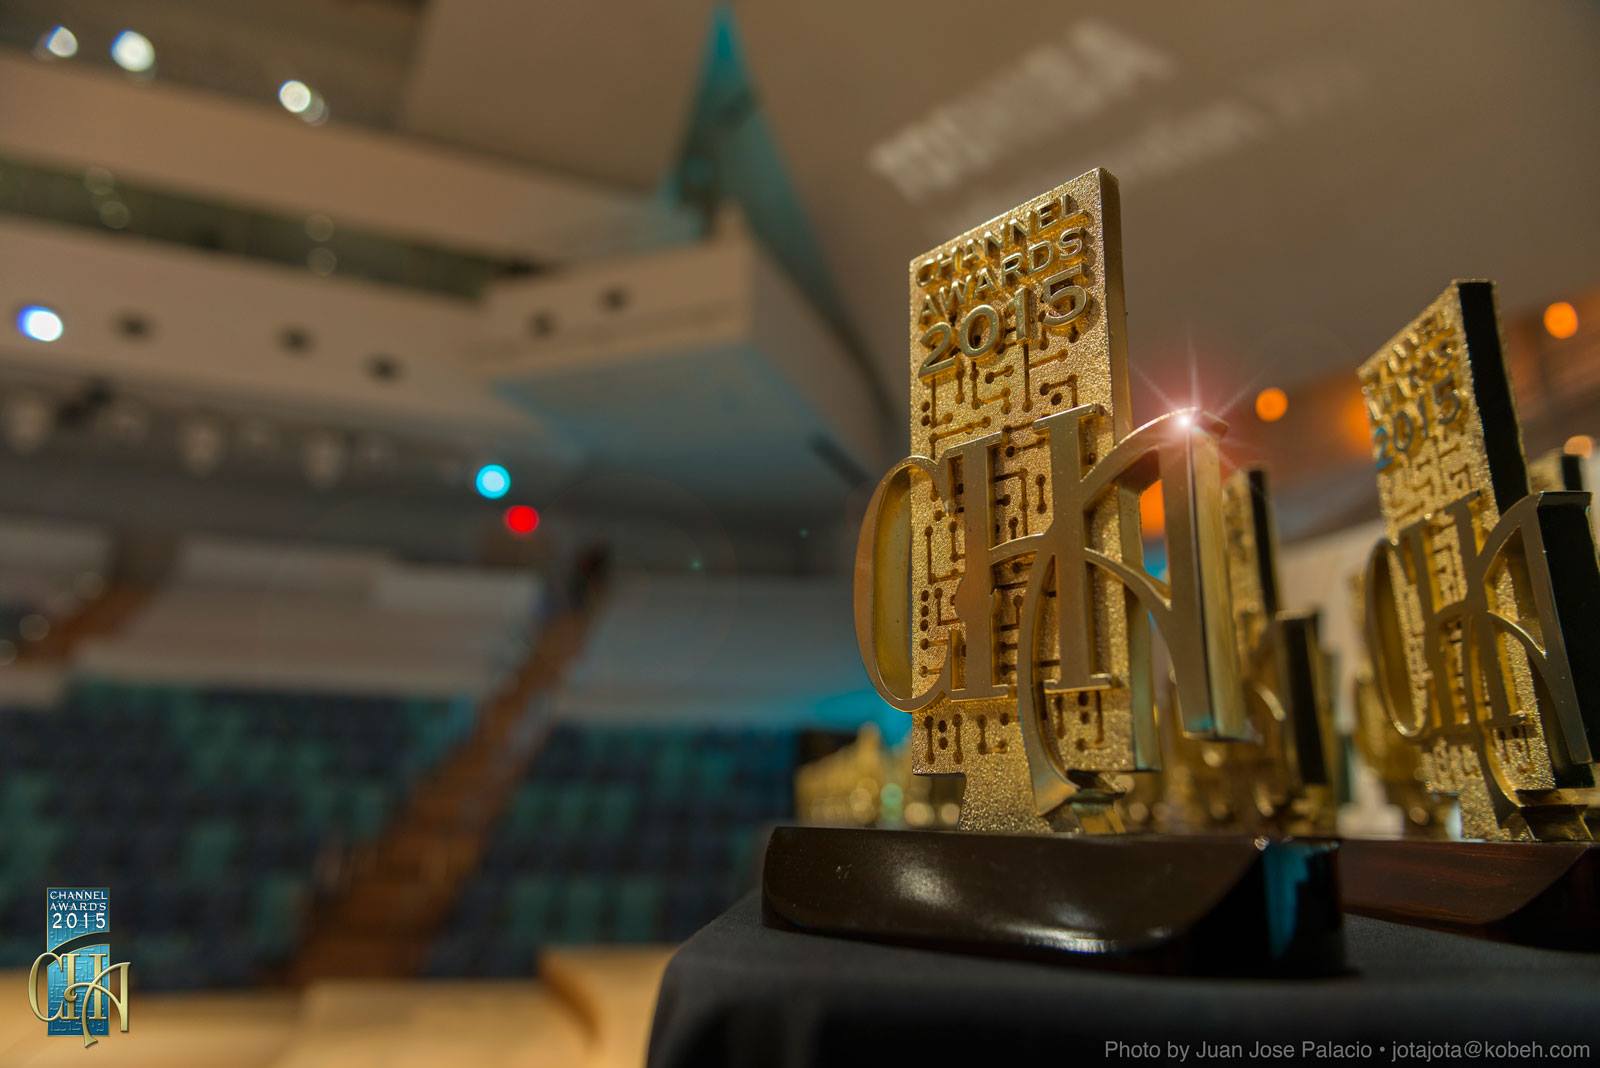 Productos de Toshiba son galardonados en los Channel Awards 2015